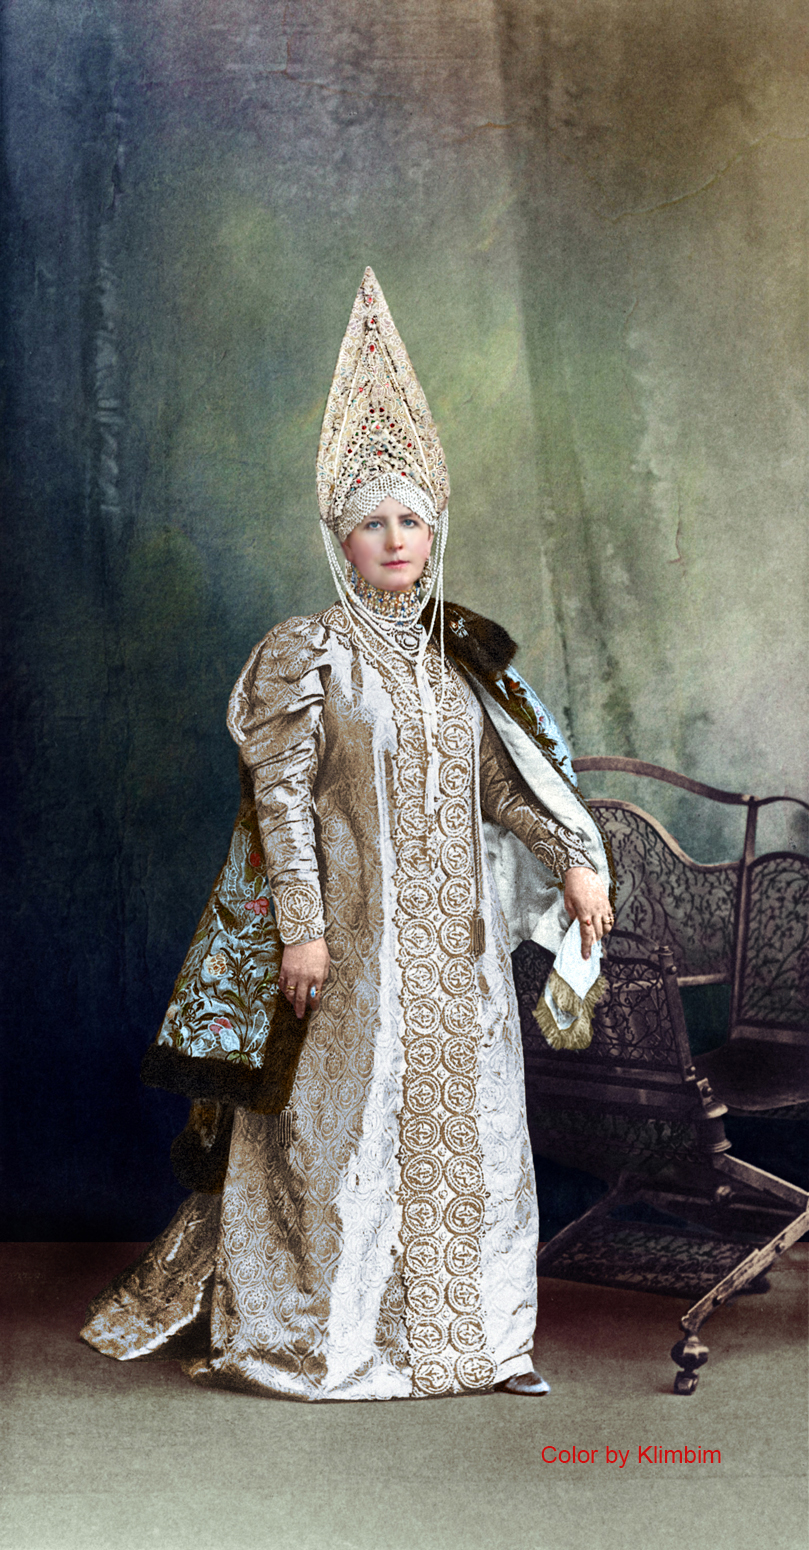 Romanovs-Final-Ball-Color-Photographs-1903-146